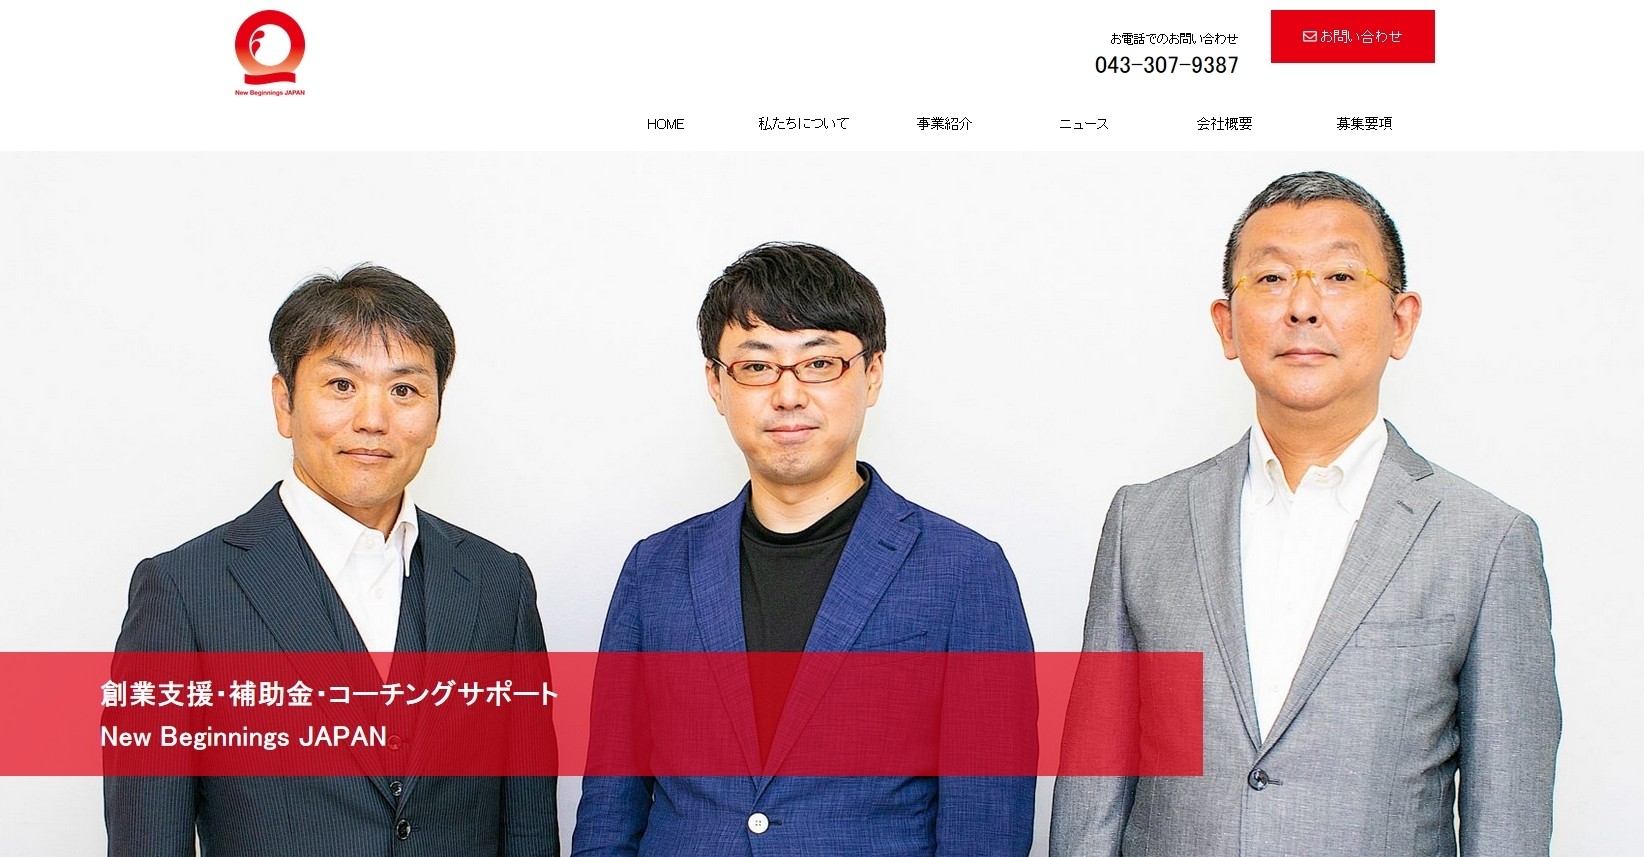 株式会社New Beginnings Japanの株式会社New Beginnings Japanサービス